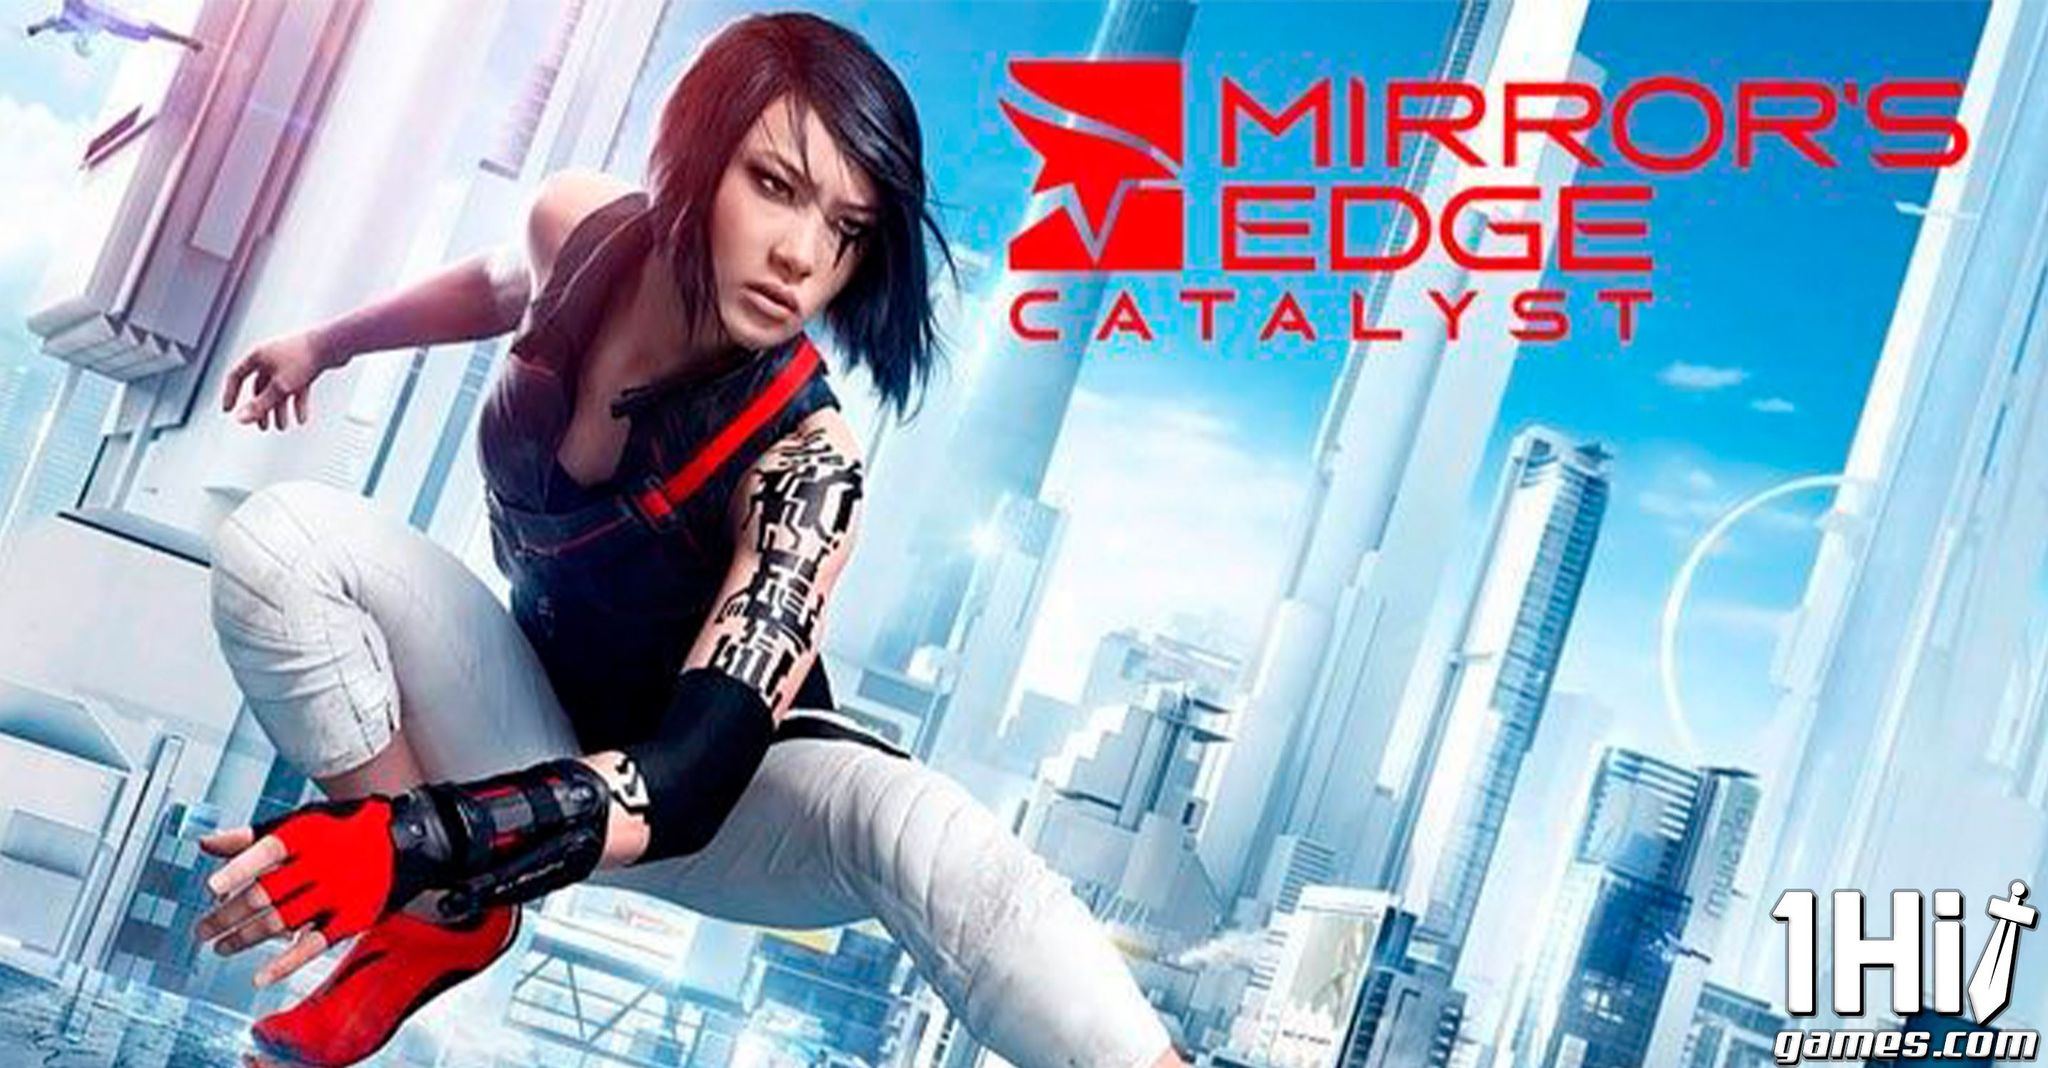 Mirror's Edge: veja dicas de como jogar o game de ação e aventura